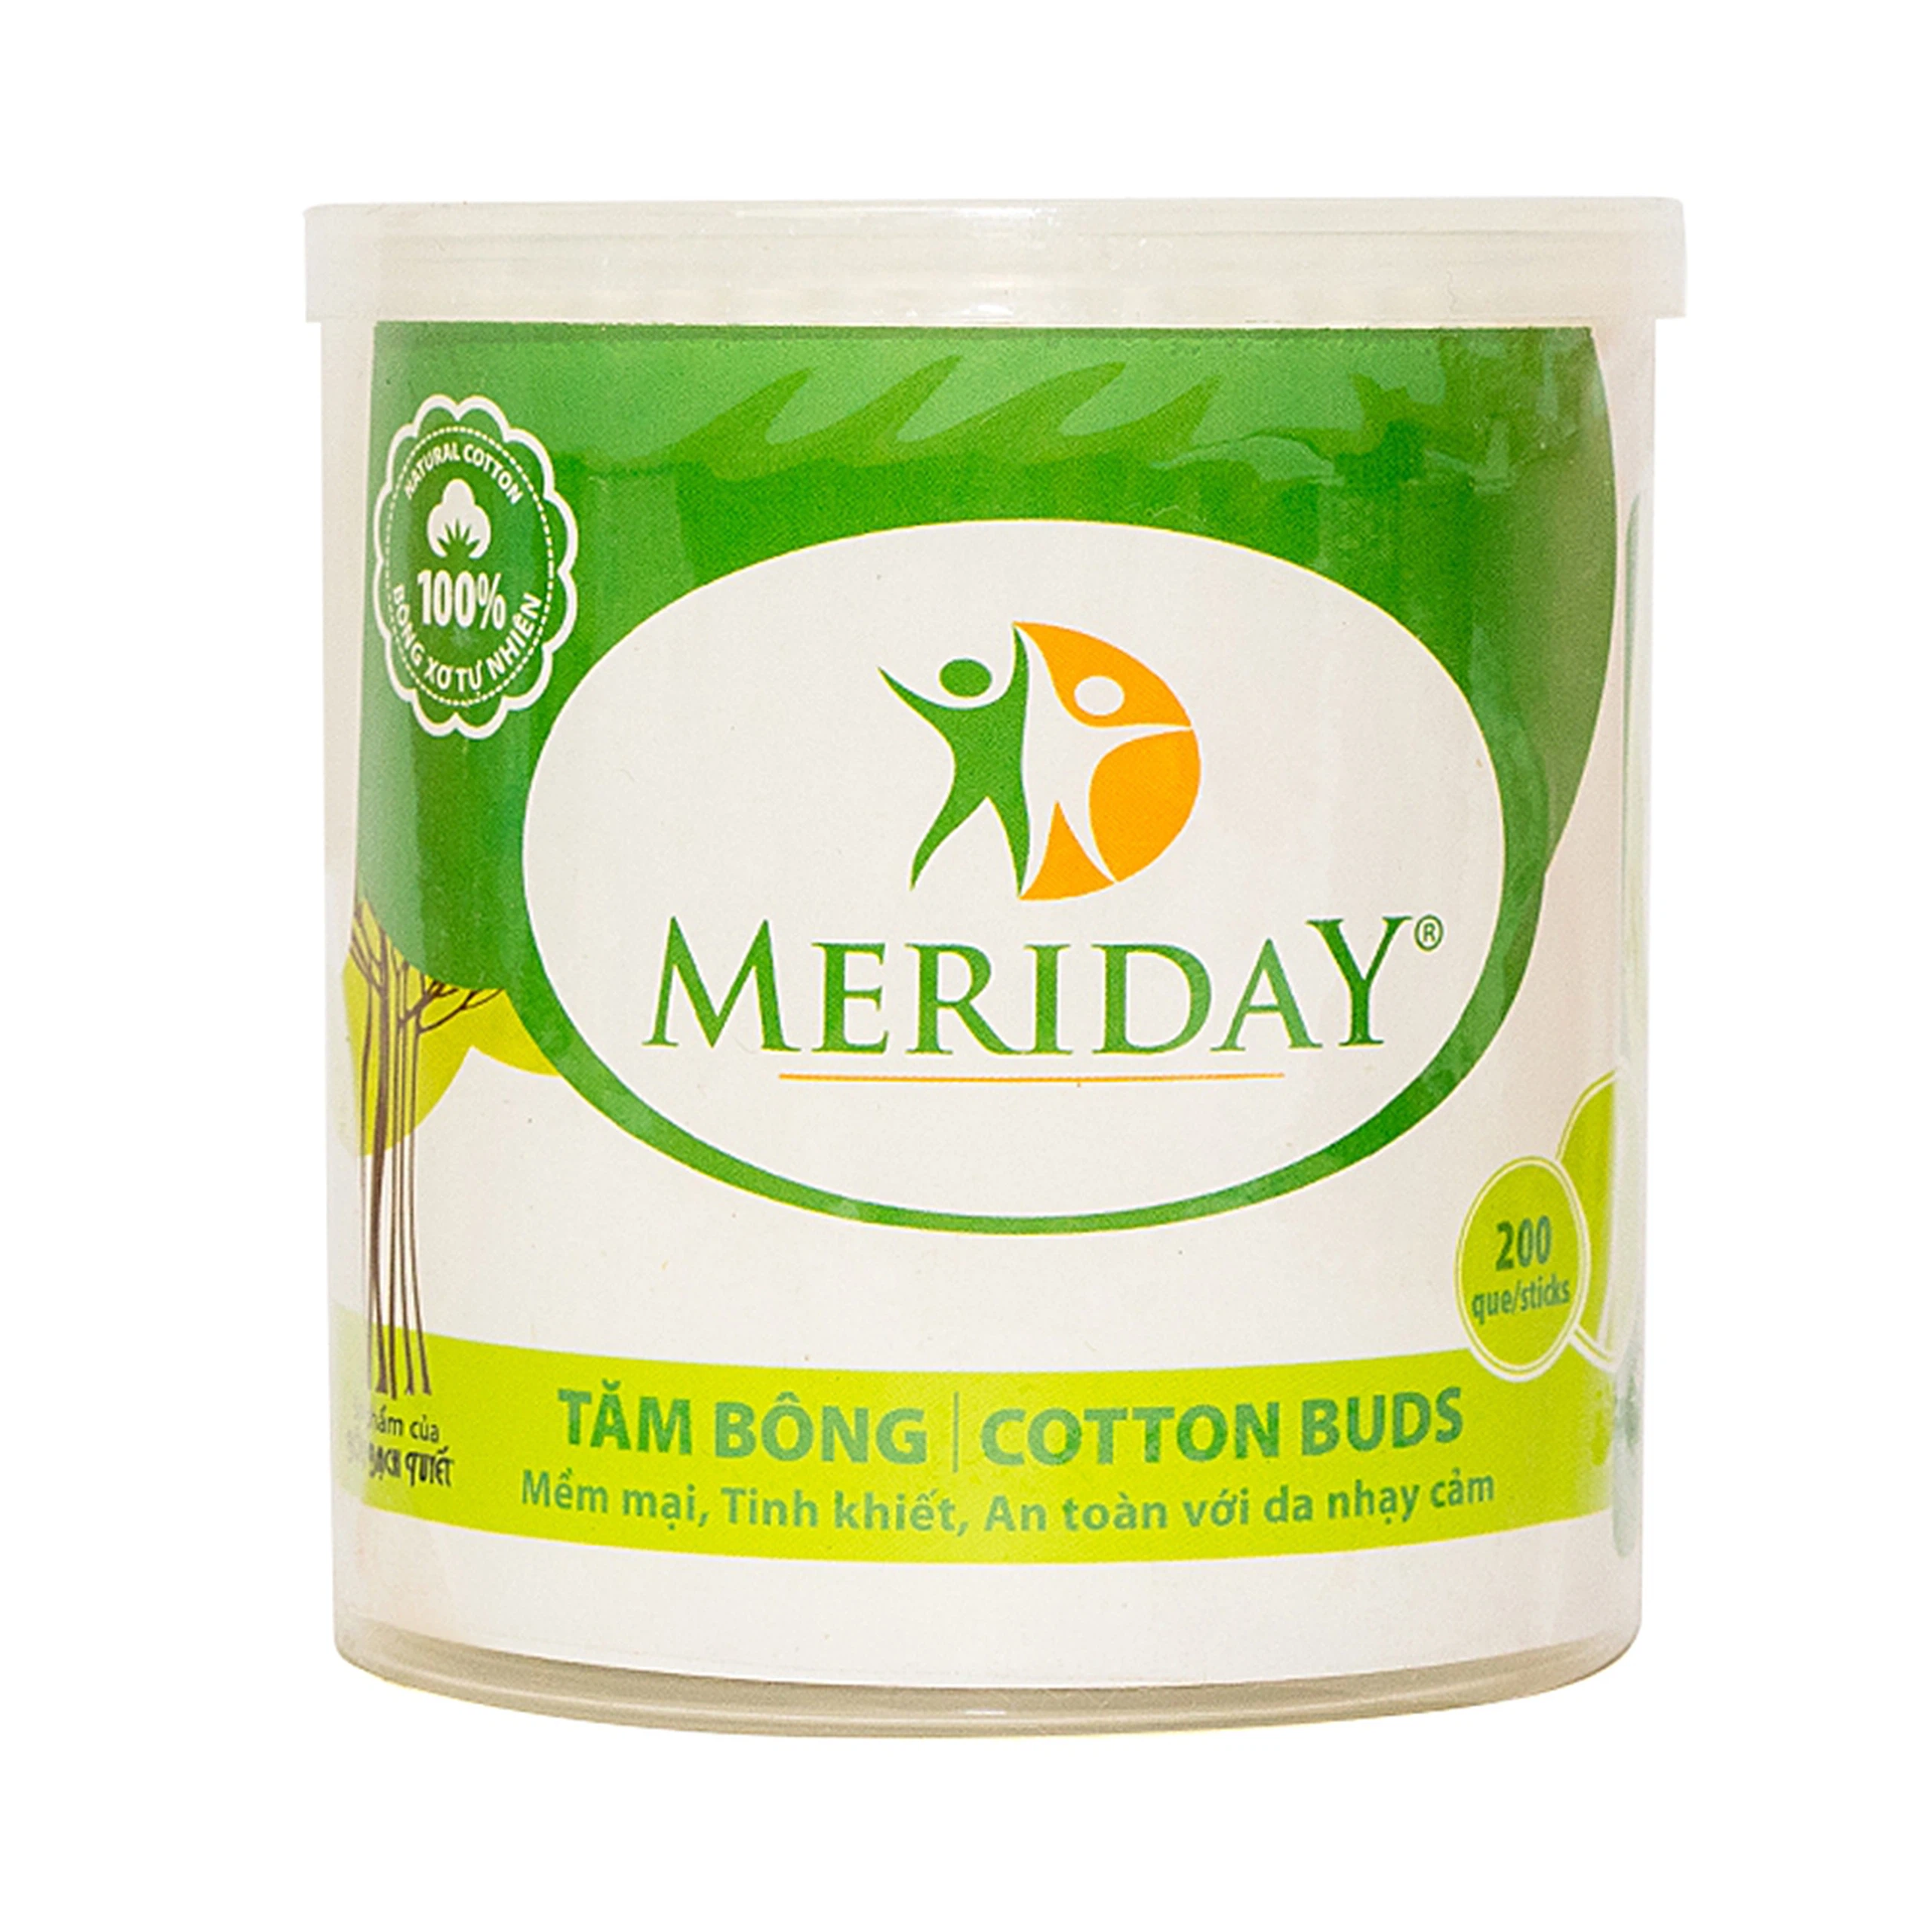 Tăm bông người lớn Cotton Buds Meriday Bạch Tuyết hỗ trợ vệ sinh tai, mũi, vết thương (200 que)